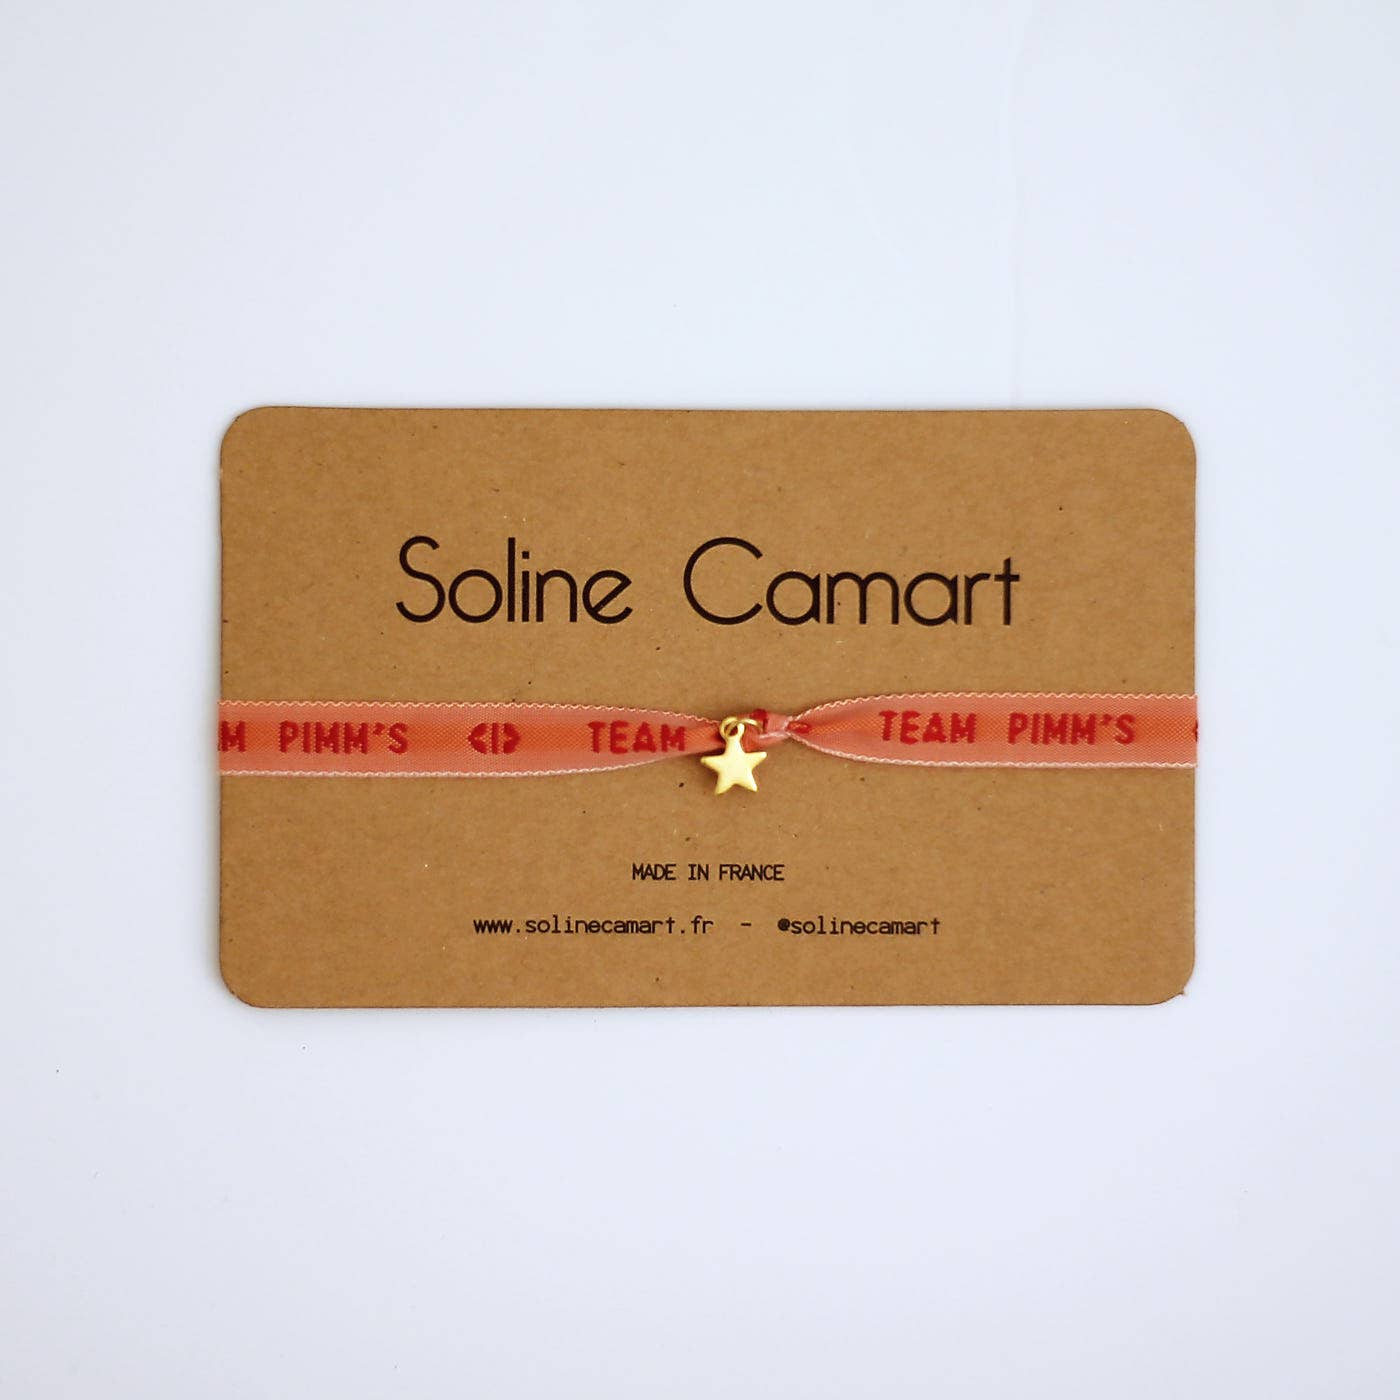 TEAM PIMM'S: Golden Star by Soline Camart